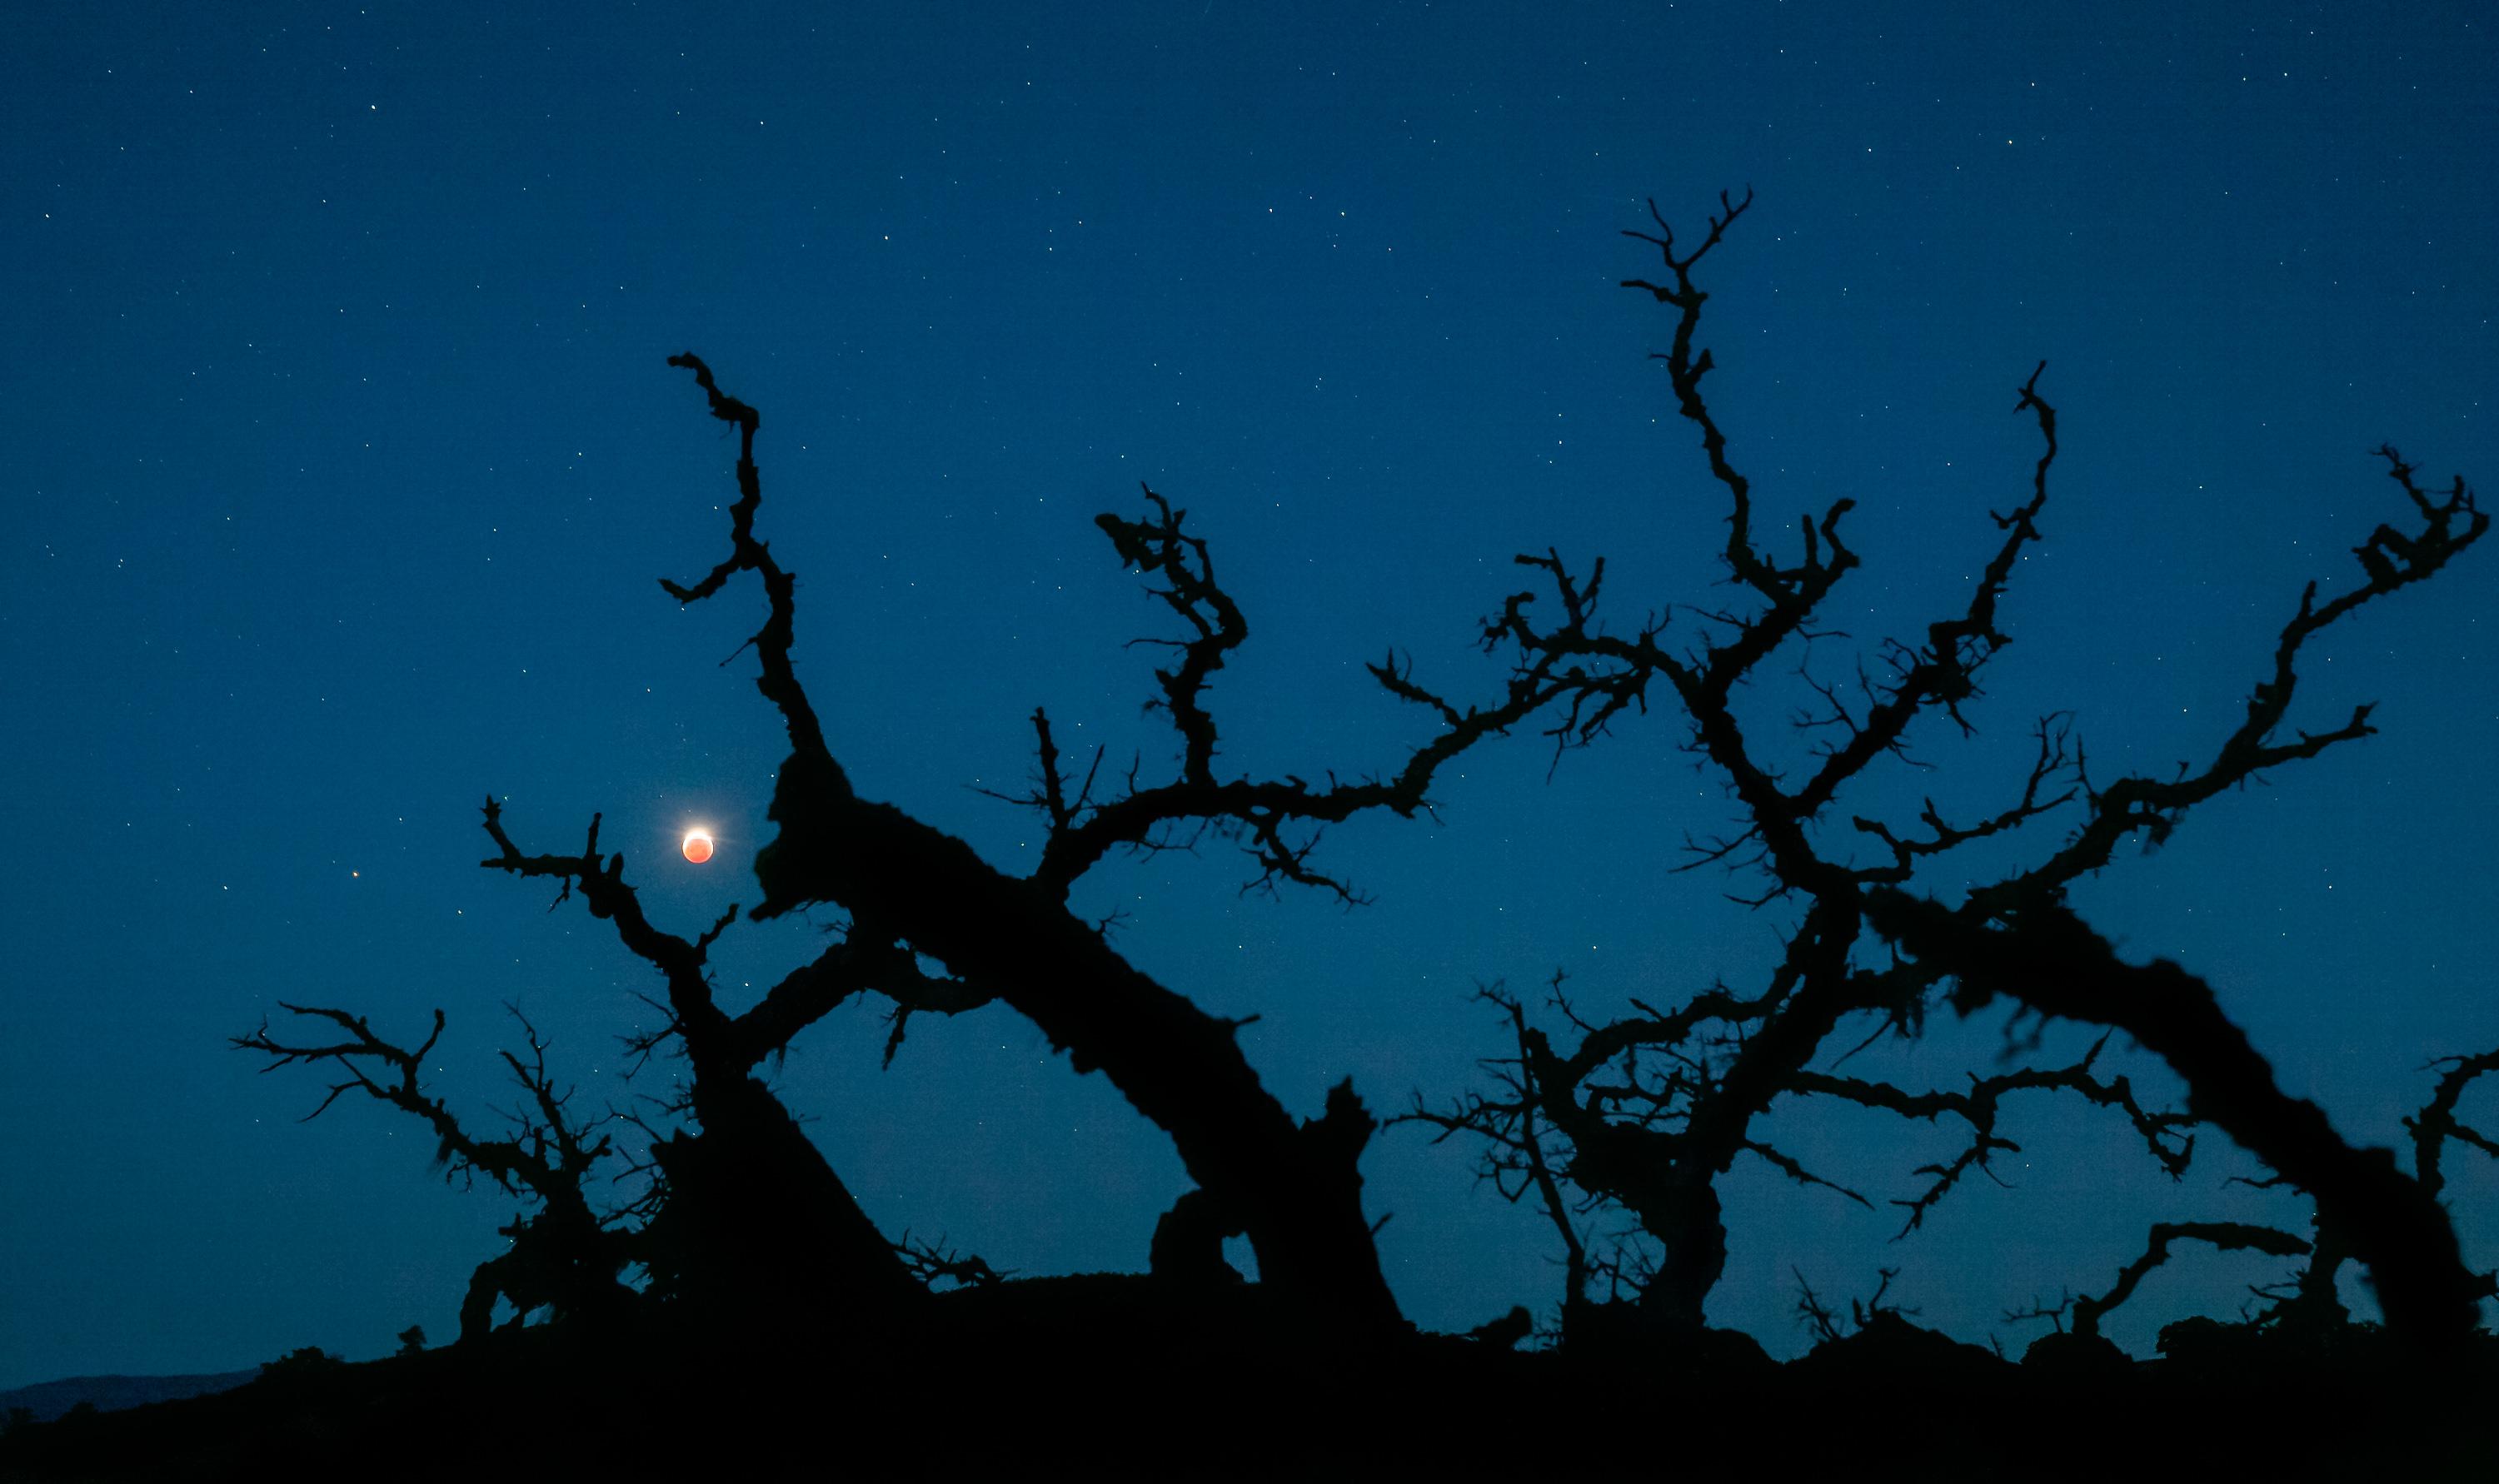 صورة لقمر مخسوف كلياً فوق الأفق في البعيد وتظهر أمامه في مقدّمة الصورة أغصان سنديان ضخمة وعارية ومتغضّنة بصورة ظليلة.